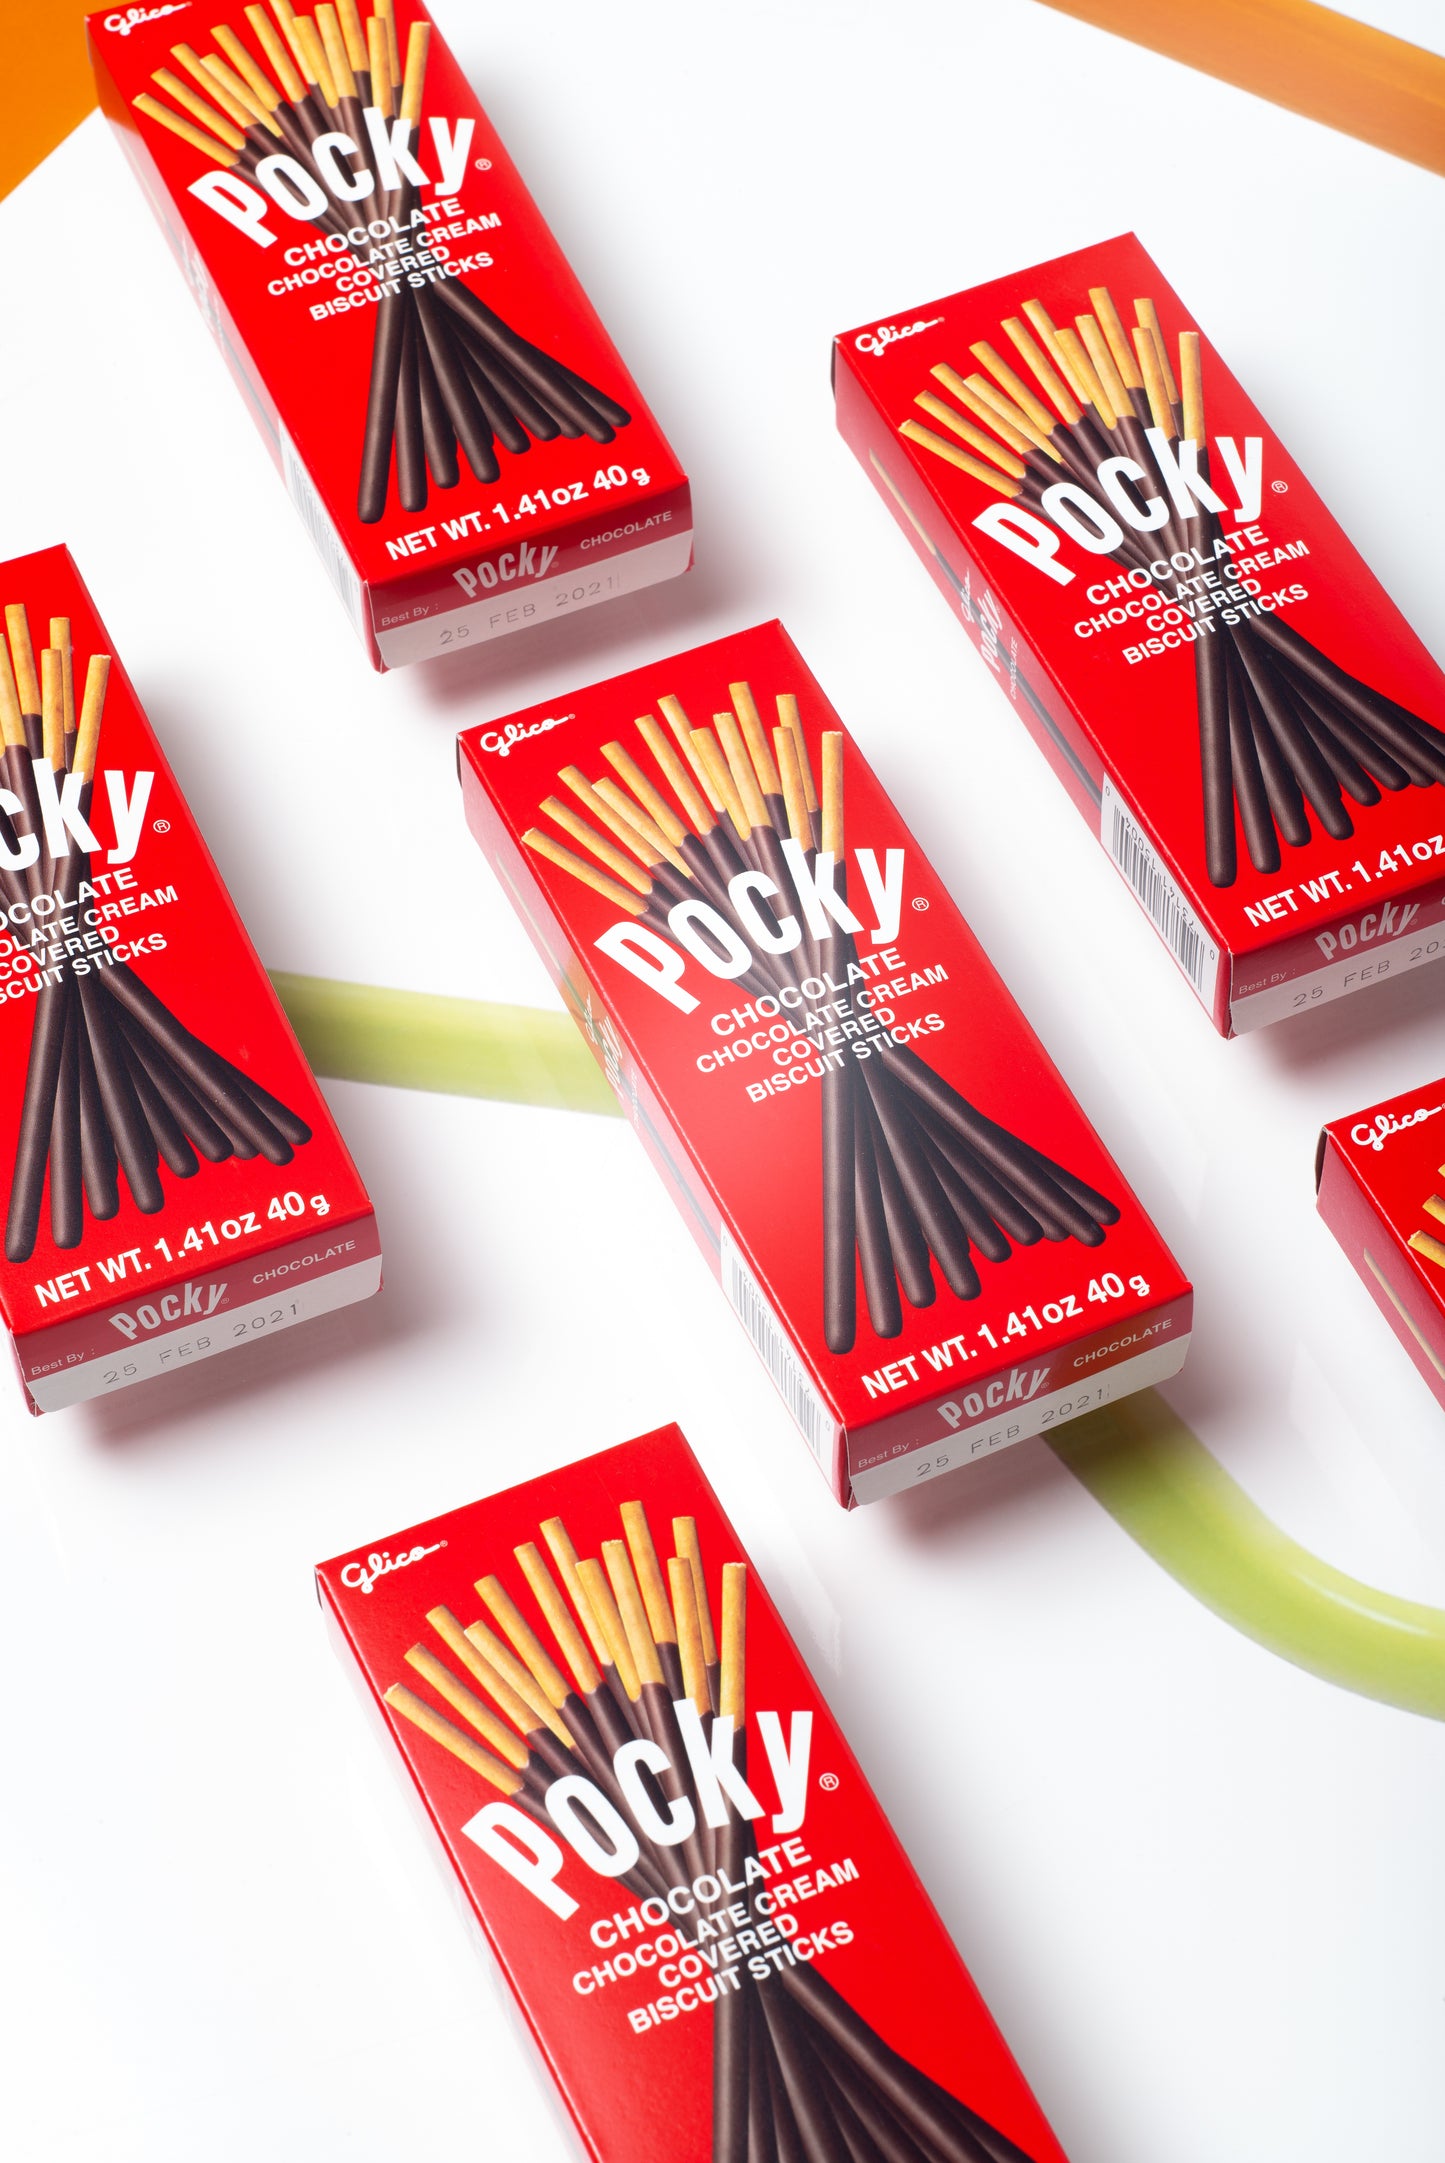 Pocky Sticks